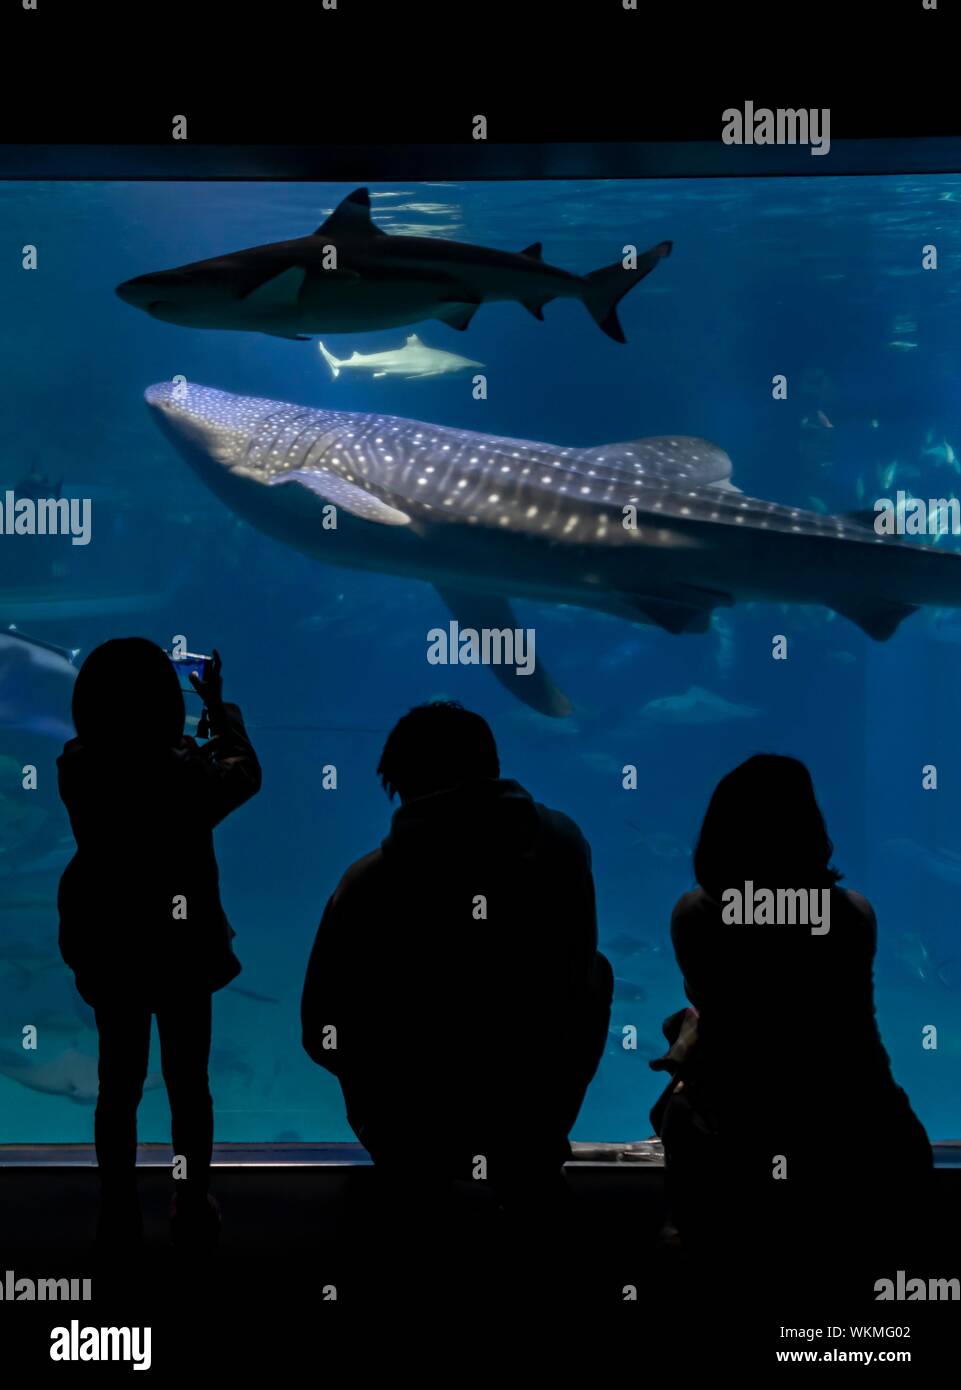 Silhouetten der Besucher vor ein großes Aquarium mit Fischen, große Walhai (Firma IPCON typus) Schwimmen, Osaka Aquarium Kaiyukan, Osaka, Japan Stockfoto